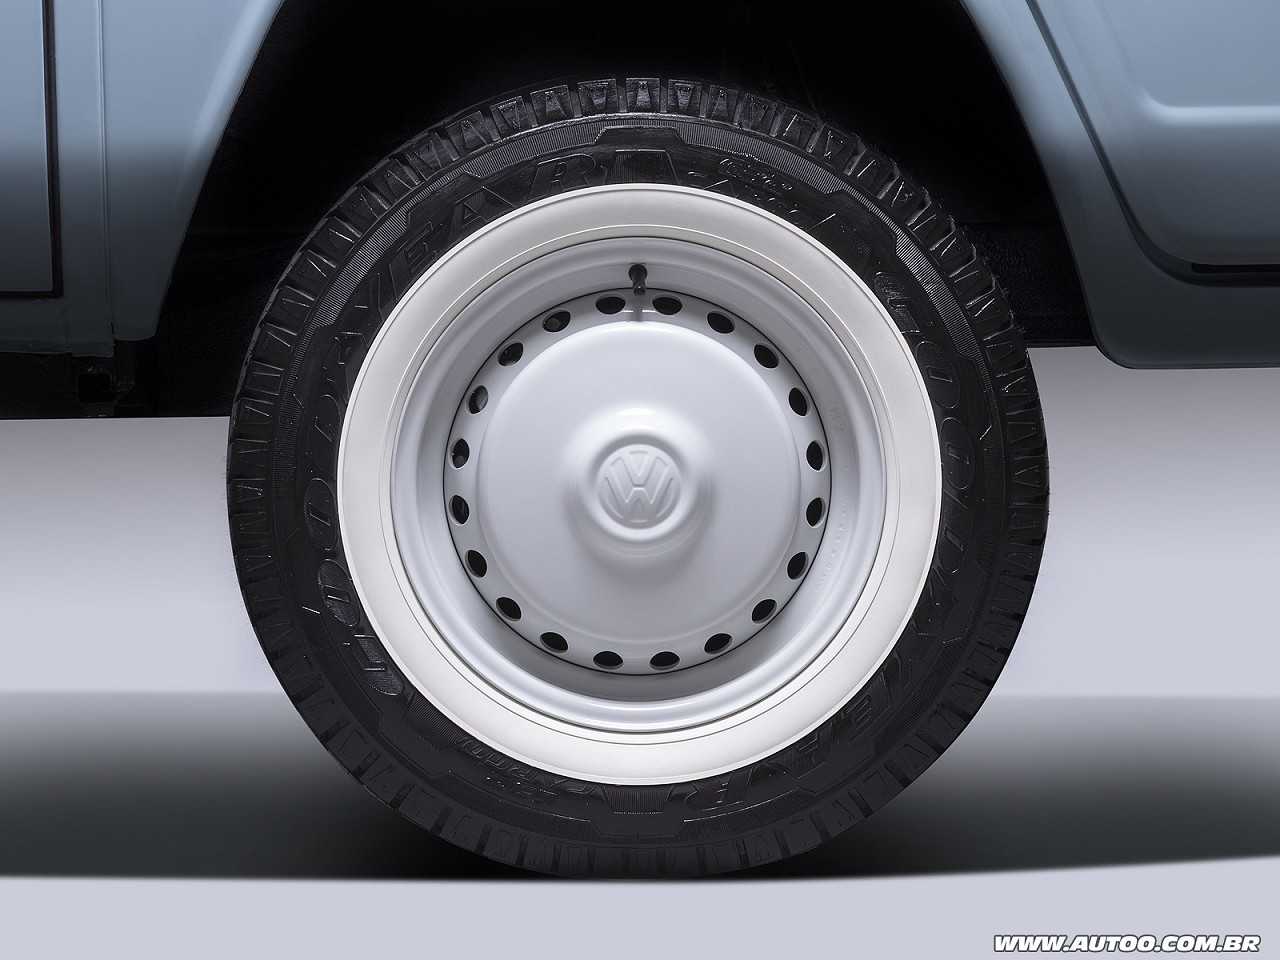 VolkswagenKombi 2014 - rodas